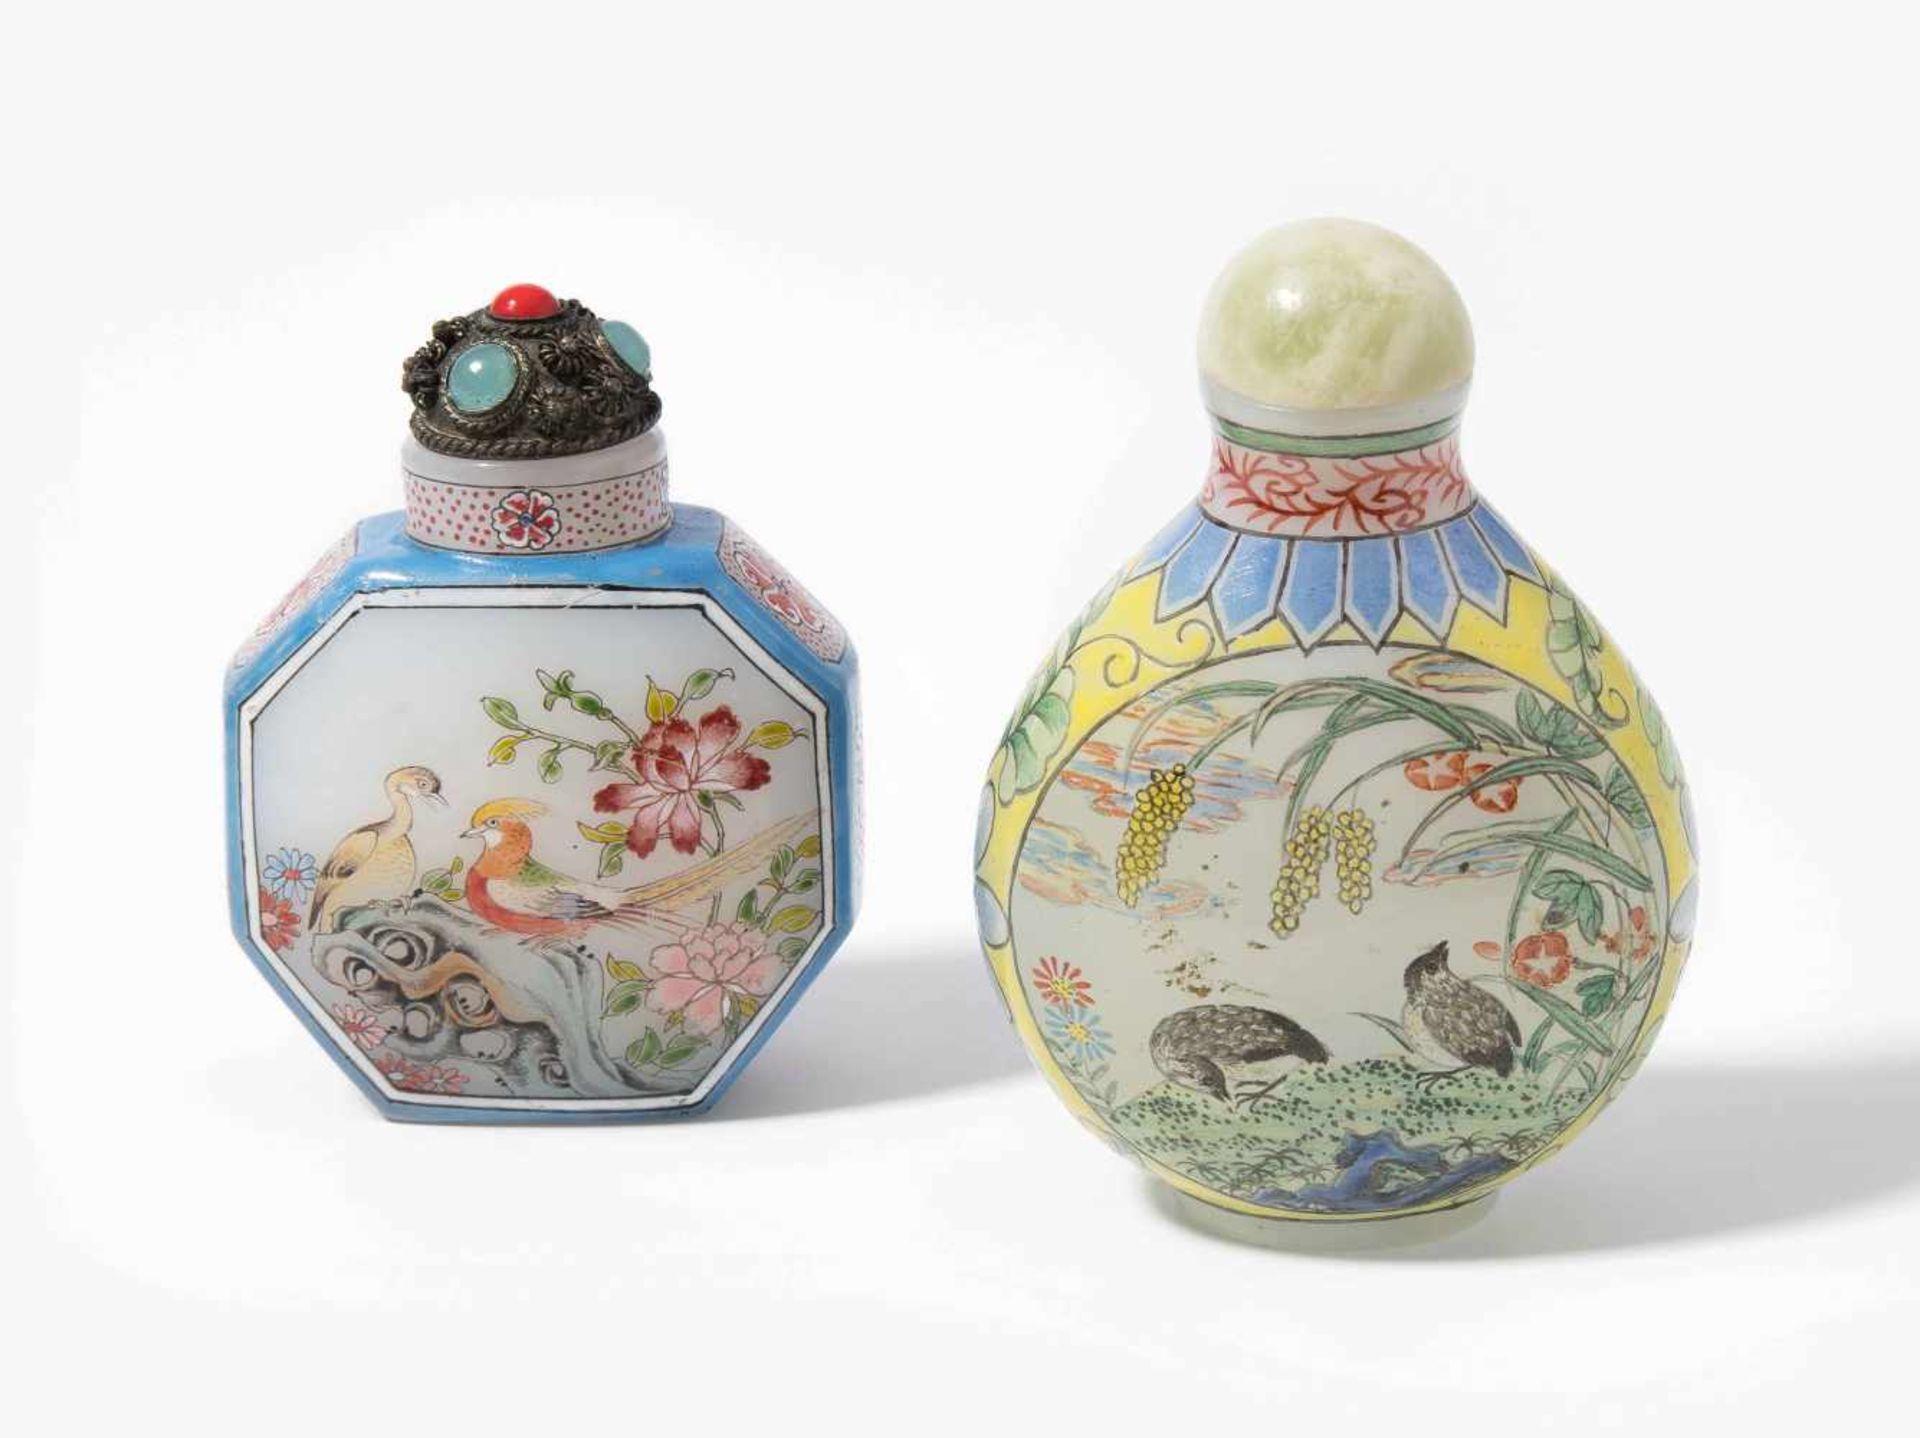 2 Glas Snuff BottlesChina. Milchglas, polychrom bemalt mit Blumen-/Vogeldekor Je mit Qianlong-Marke.